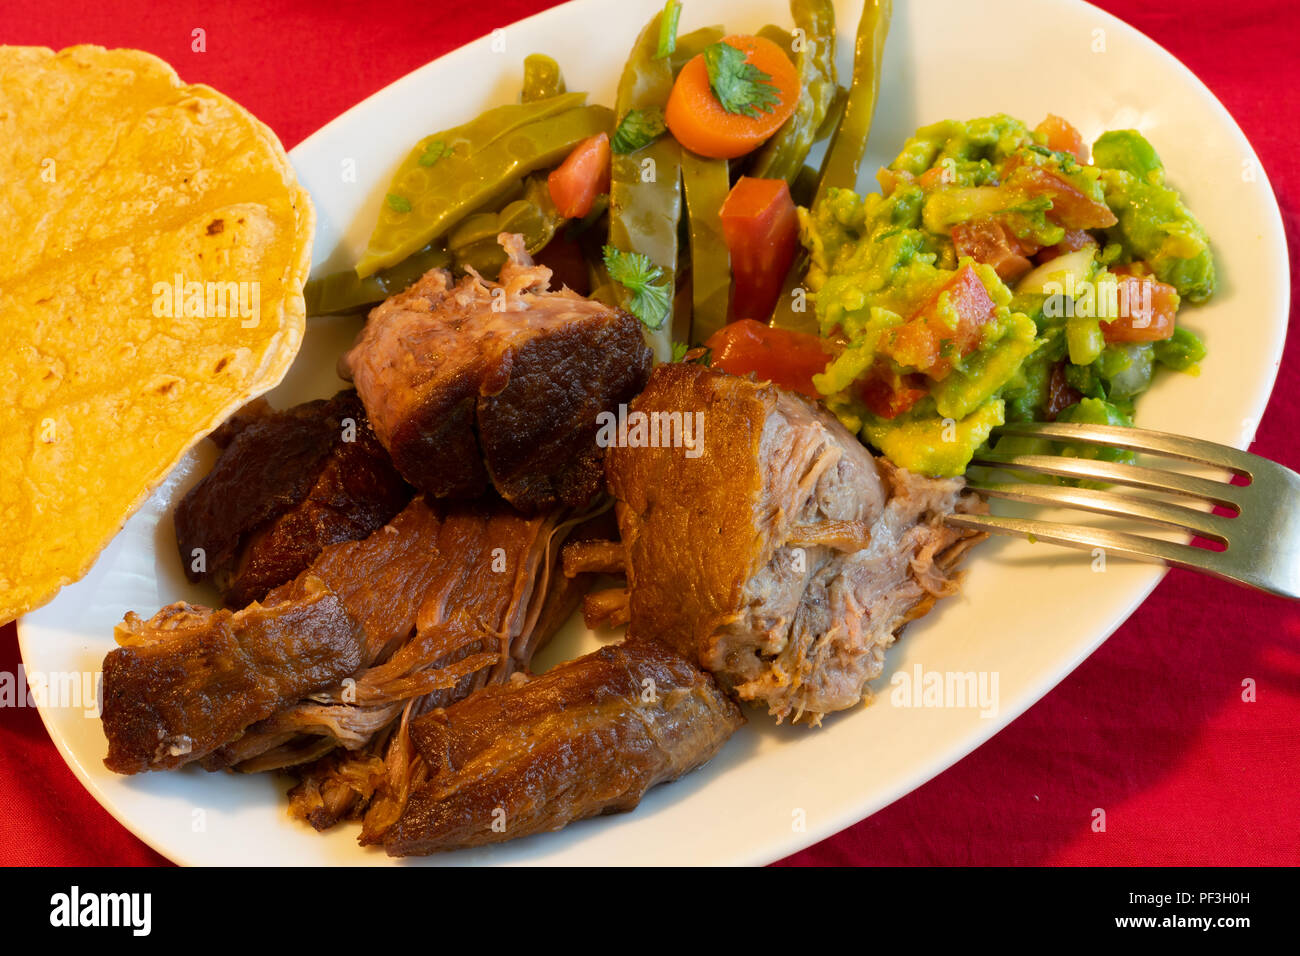 Carnitas mexikanische Gericht aus Schweinefleisch mit nopales, Guacamole und Tortillas. Stockfoto